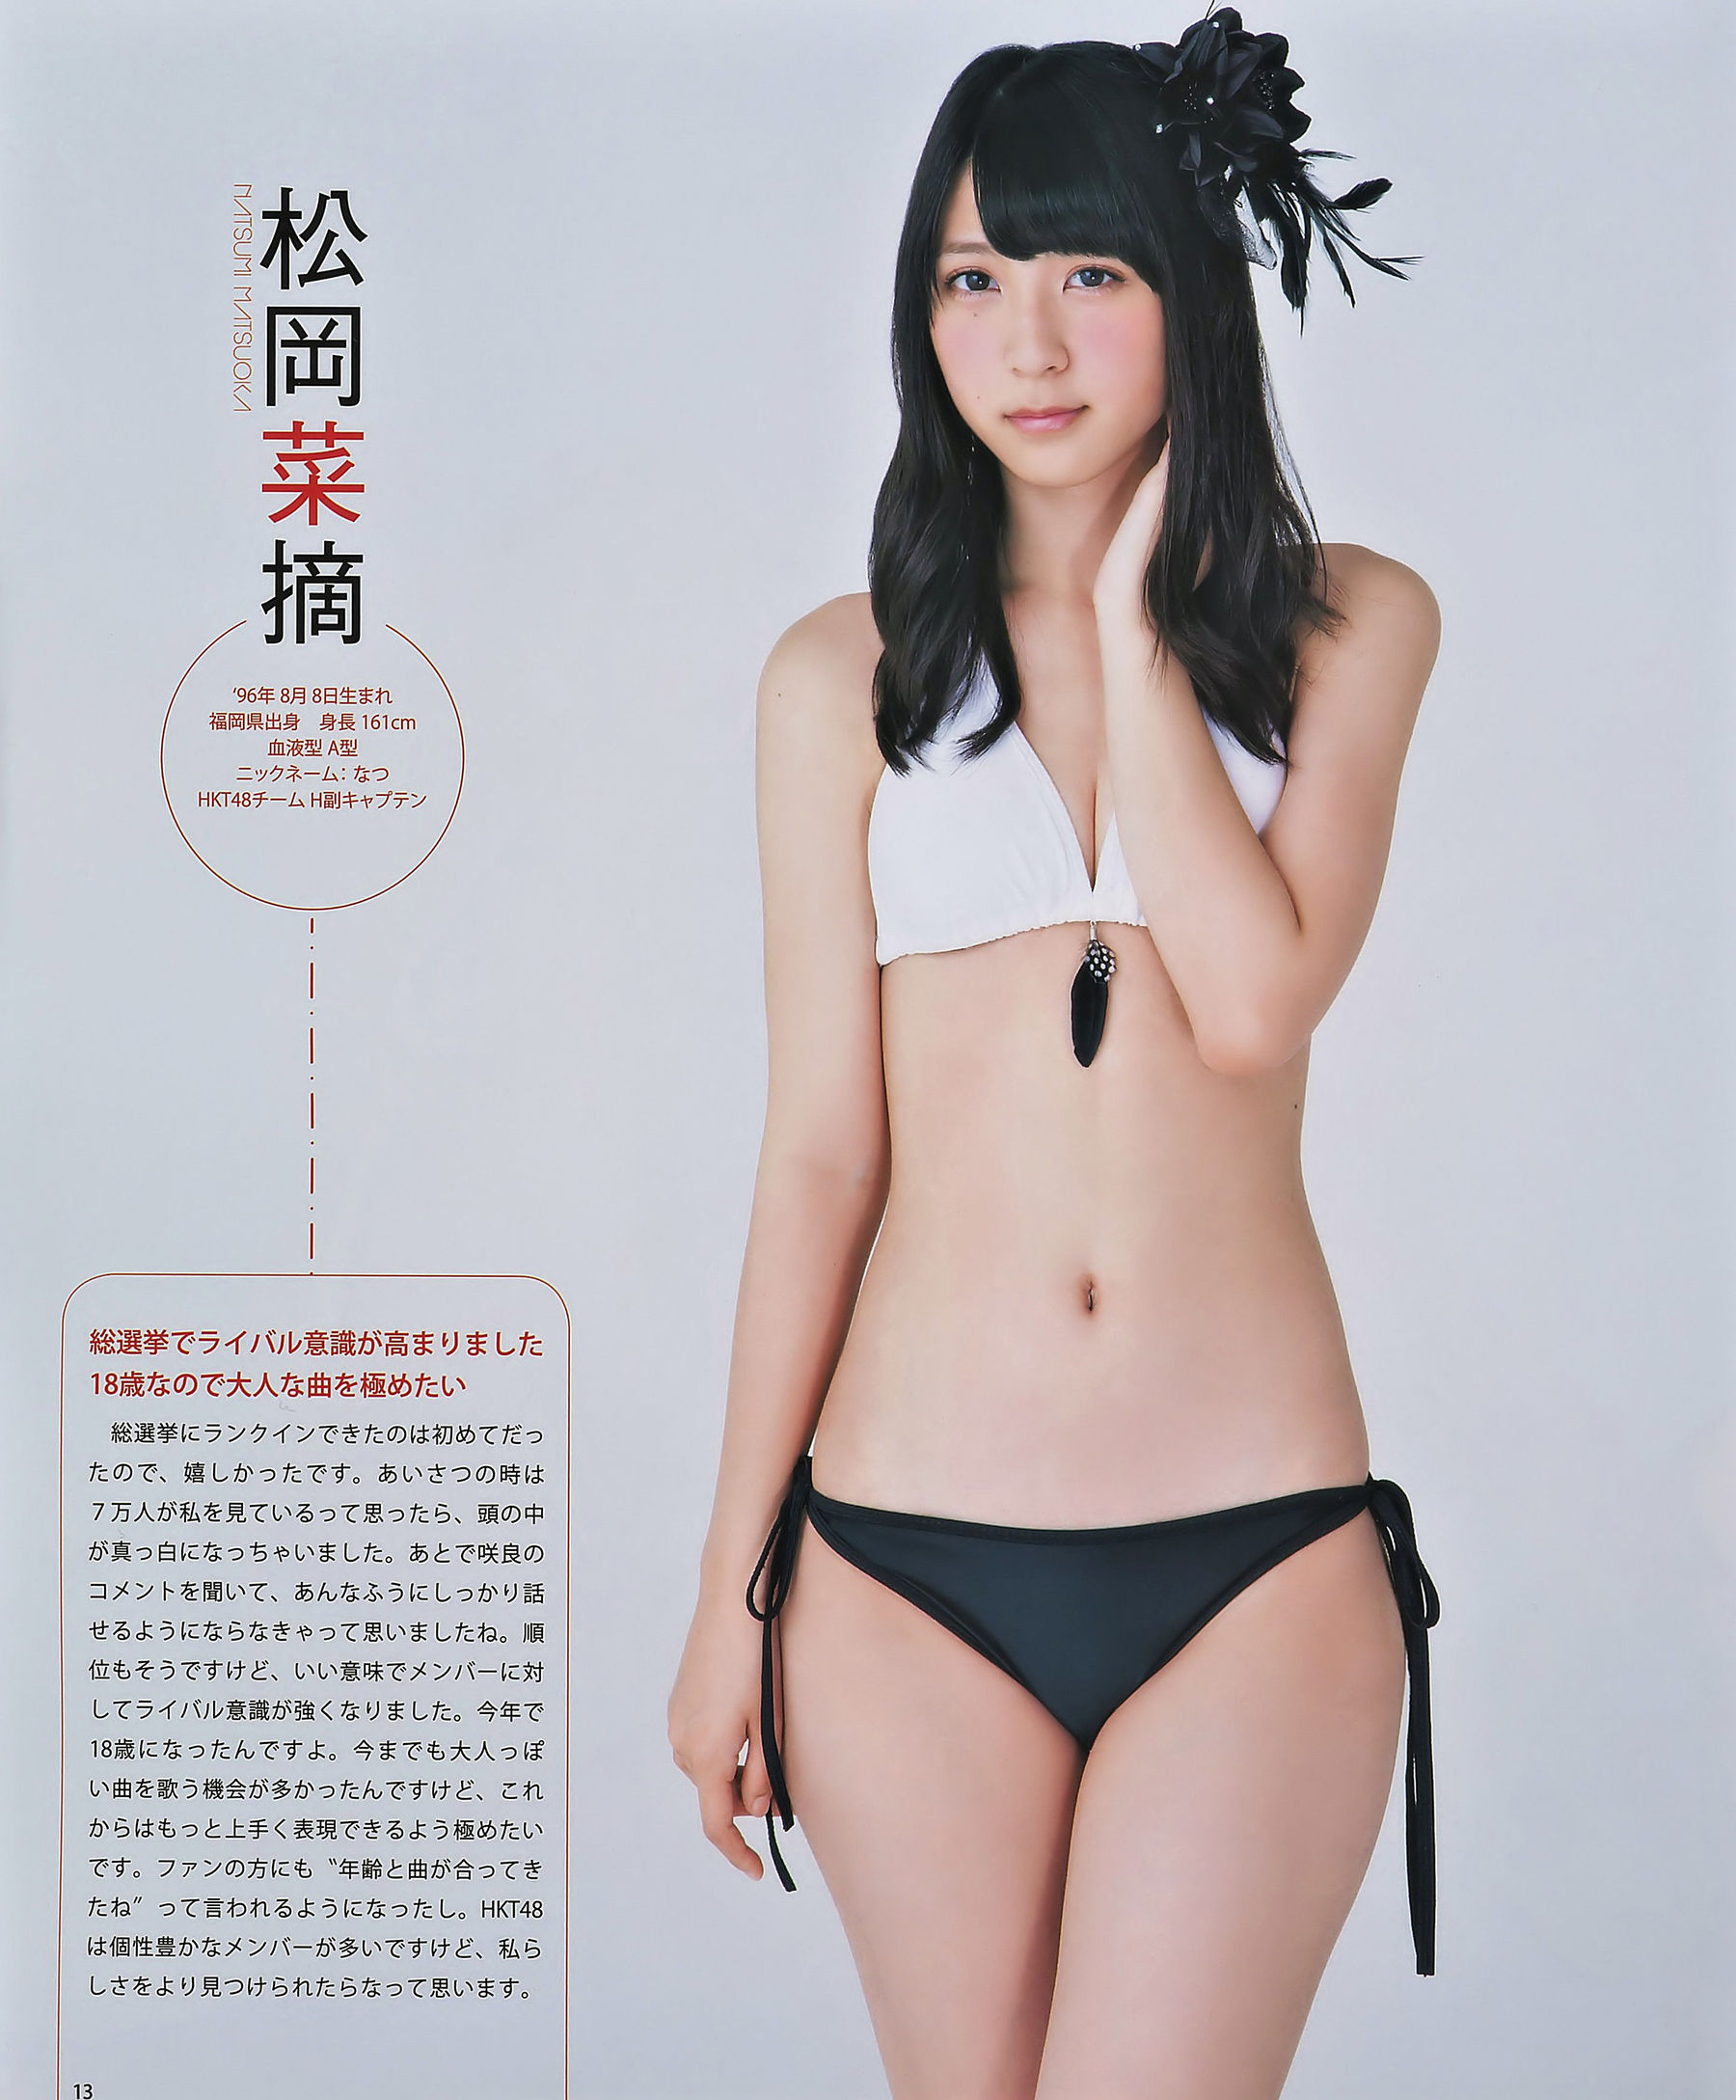 [Bomb Magazine] 2014 No.10 Sakura Miyawaki Haruka Kodama Madoka Moriyasu Natsumi Matsuoka Photograph Page 15 No.d73254